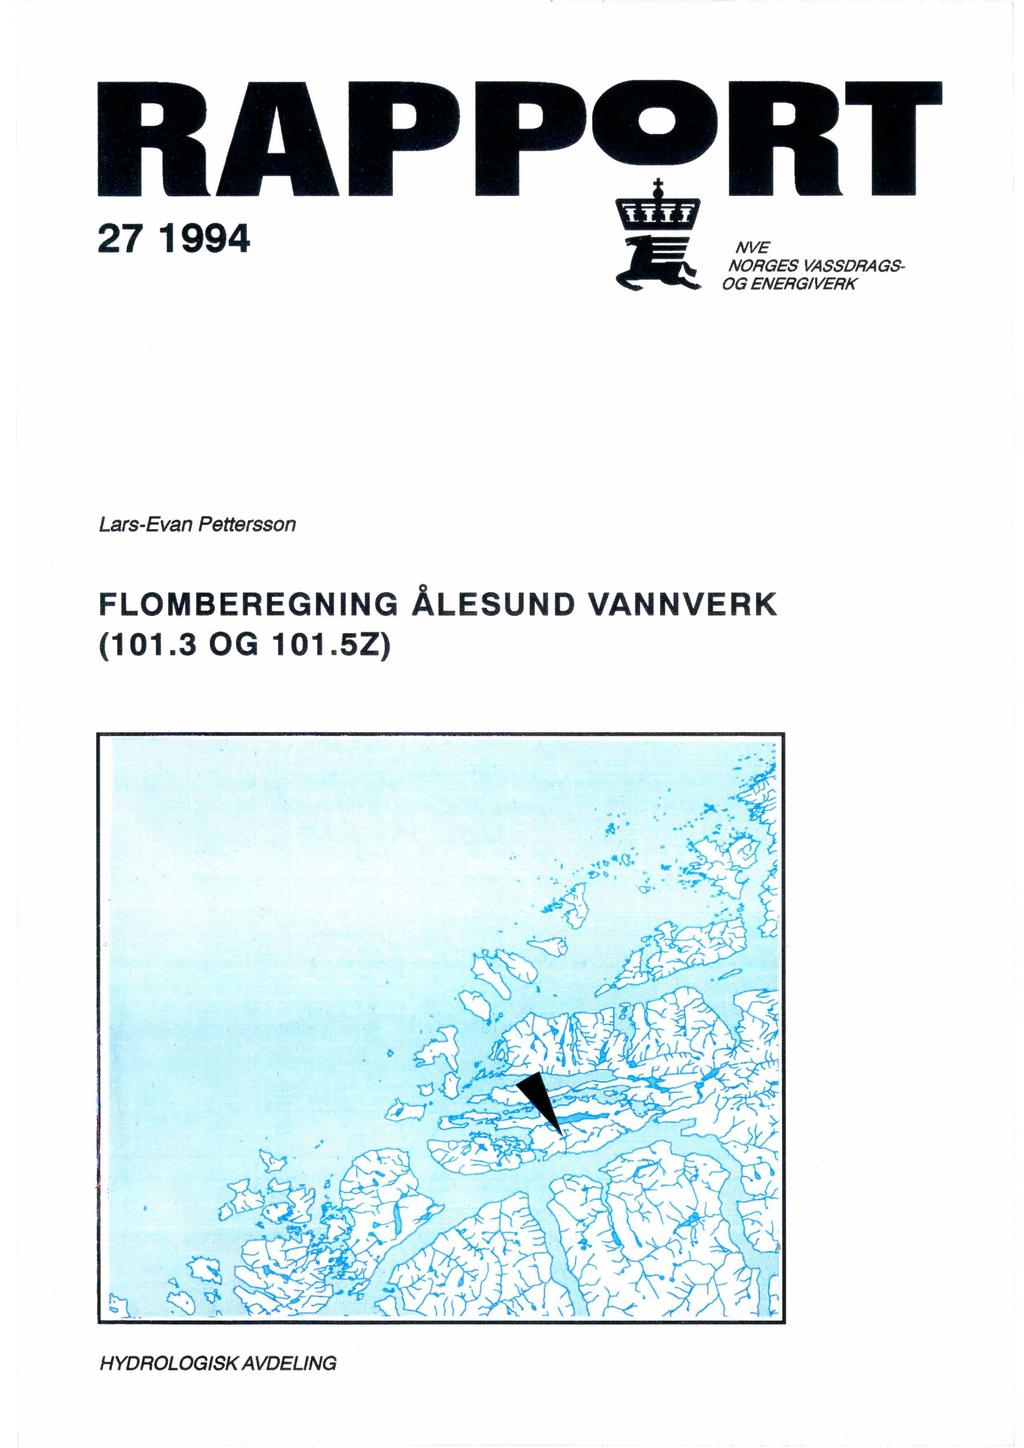 27 1994 NVE NRGES VASSDRAGS G ENERGVERK Lars-Evan Petterssn